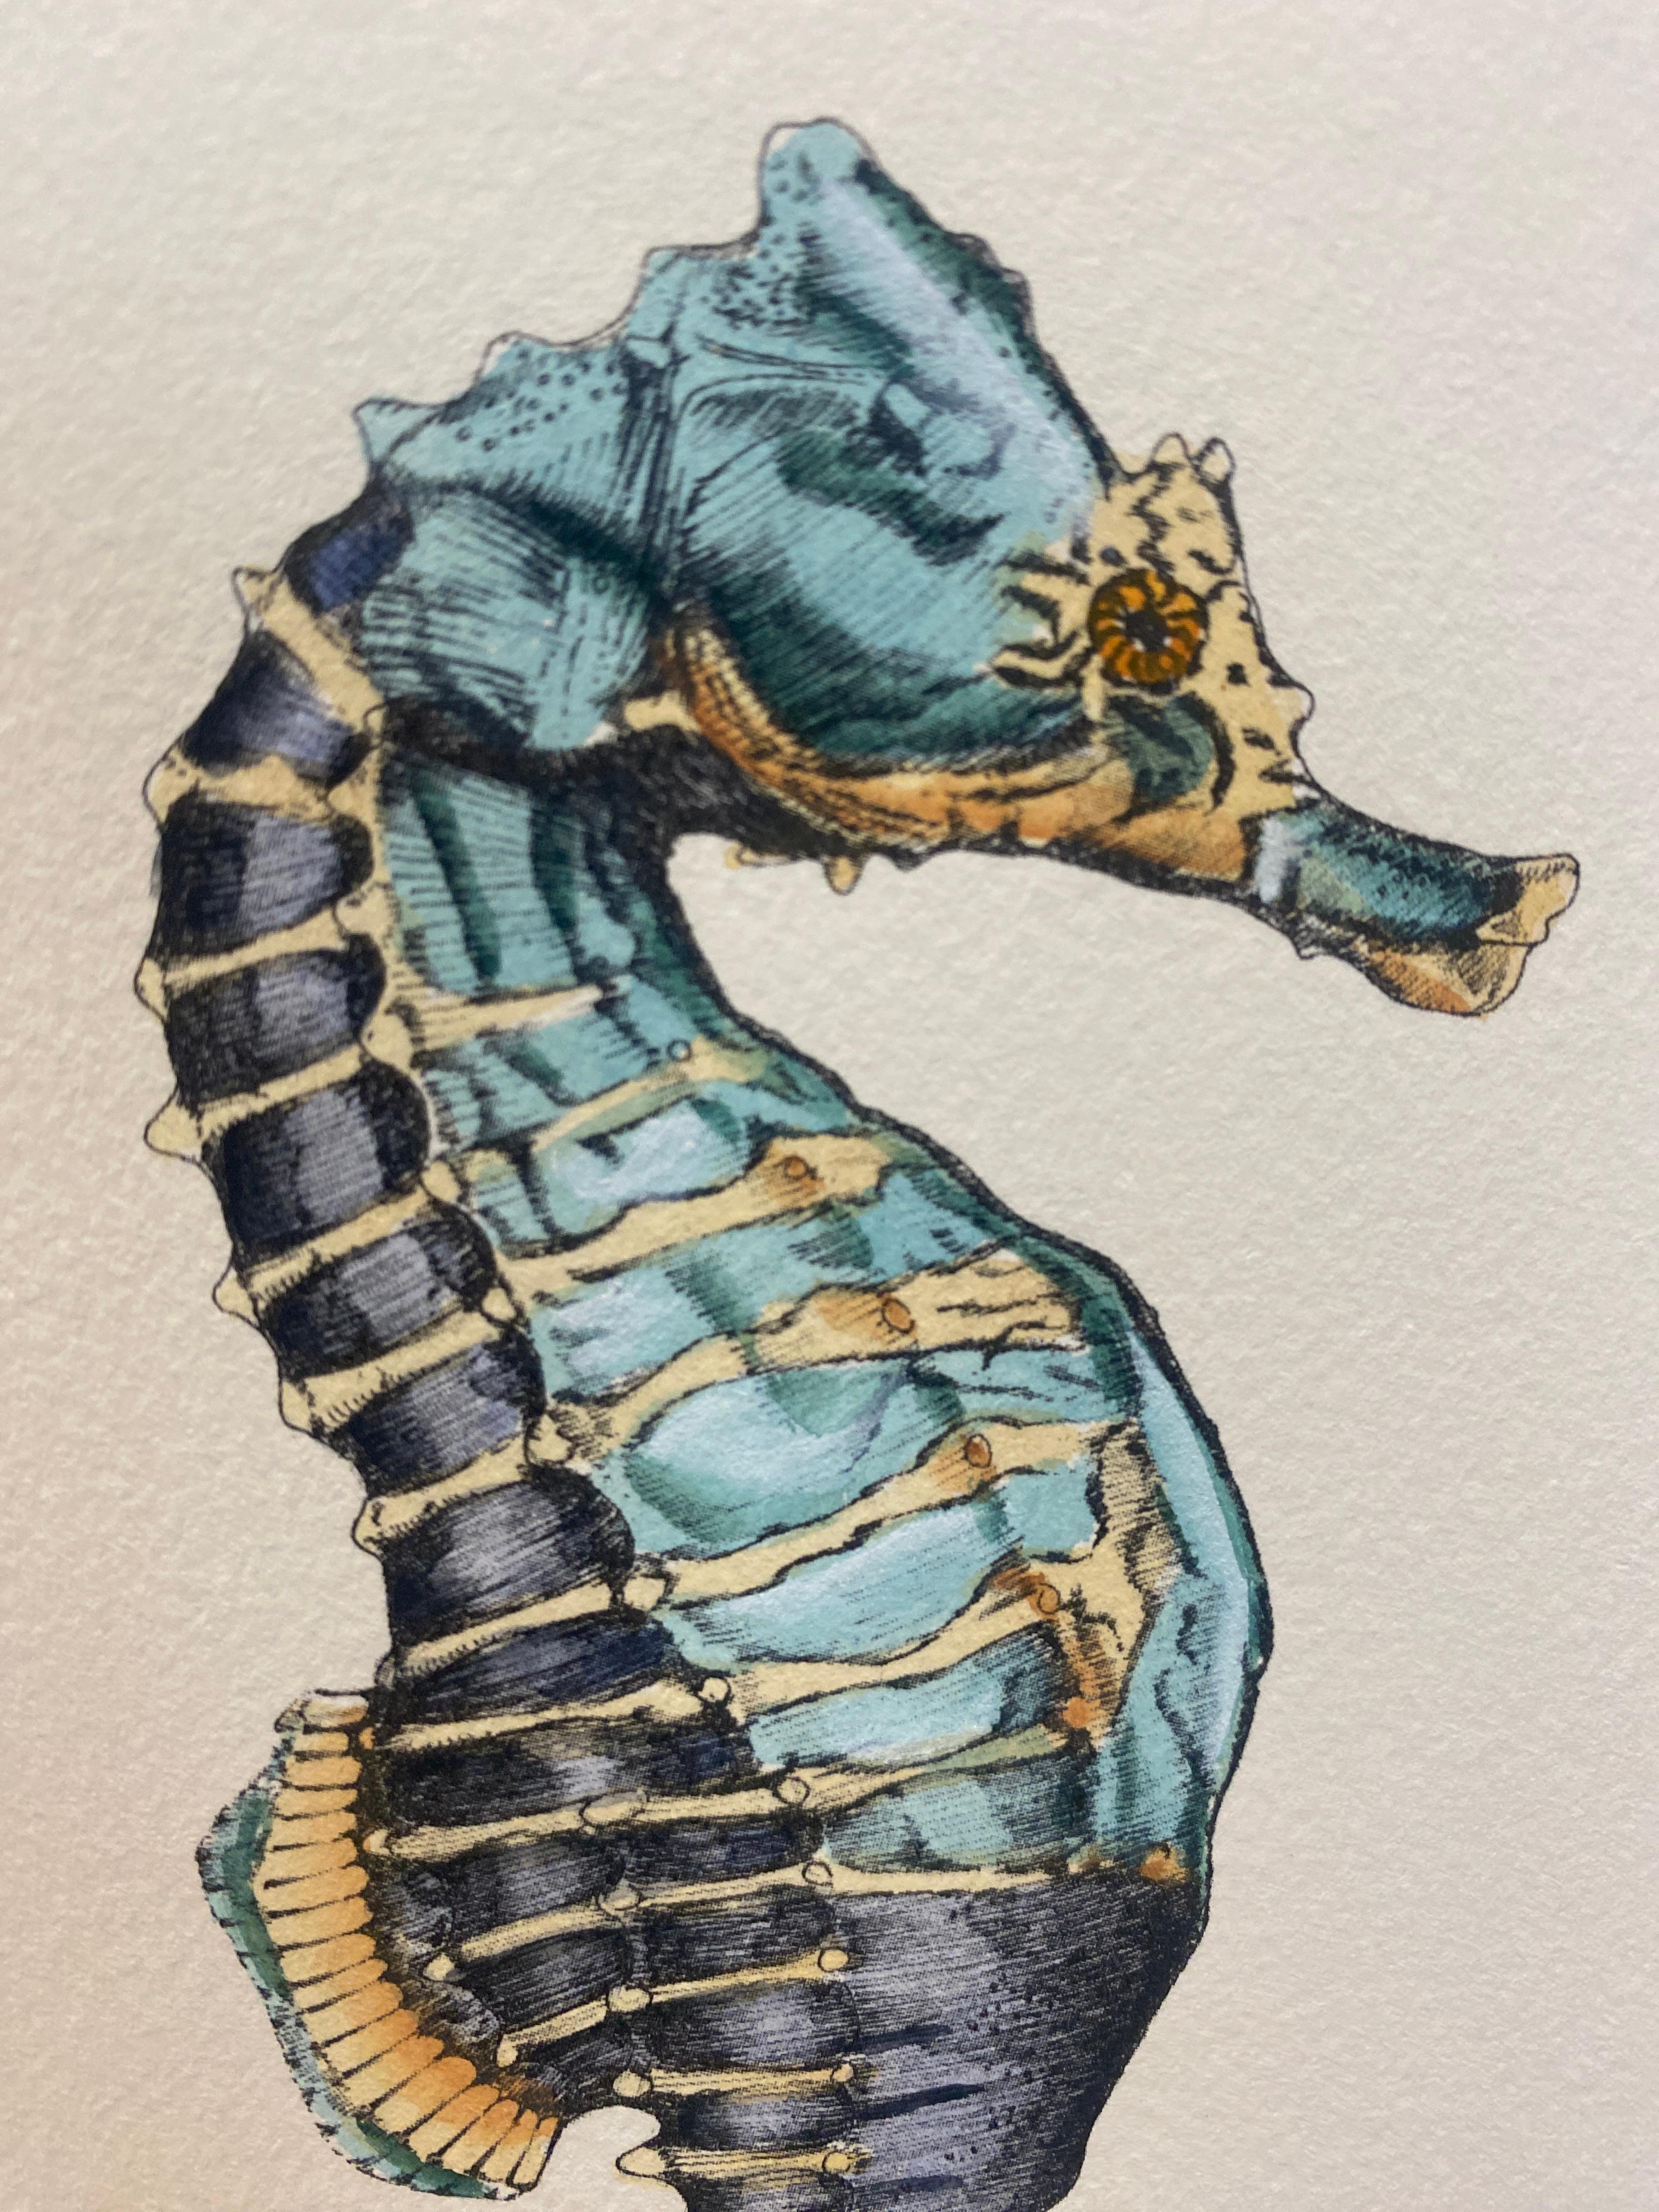 Eleganter, handaquarellierter Druck, der einen Hippocampus Kuda in hellblauer Nuance darstellt. Das Bild wurde nach alten und berühmten Illustrationen reproduziert.
Diese Drucke sind in 2 verschiedenen Darstellungen erhältlich, um eine helle und